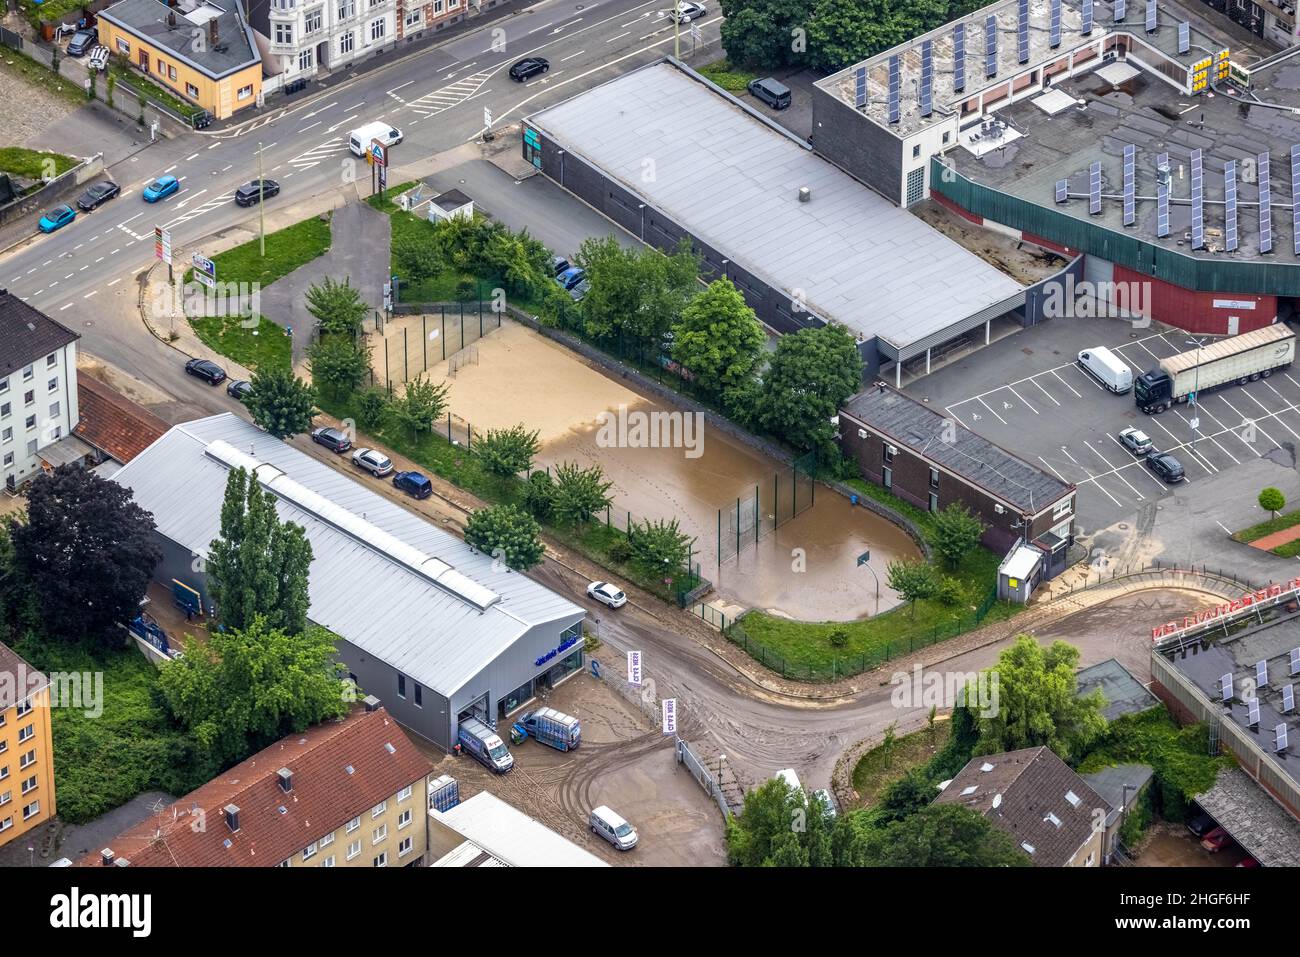 Foto aerea, alluvione Volme, alluvione, Eilpe, Hagen, Zona della Ruhr, Renania settentrionale-Vestfalia, Germania, Uftbild, Volmehochwasser, Überschwemmung, Mittelstadt Foto Stock